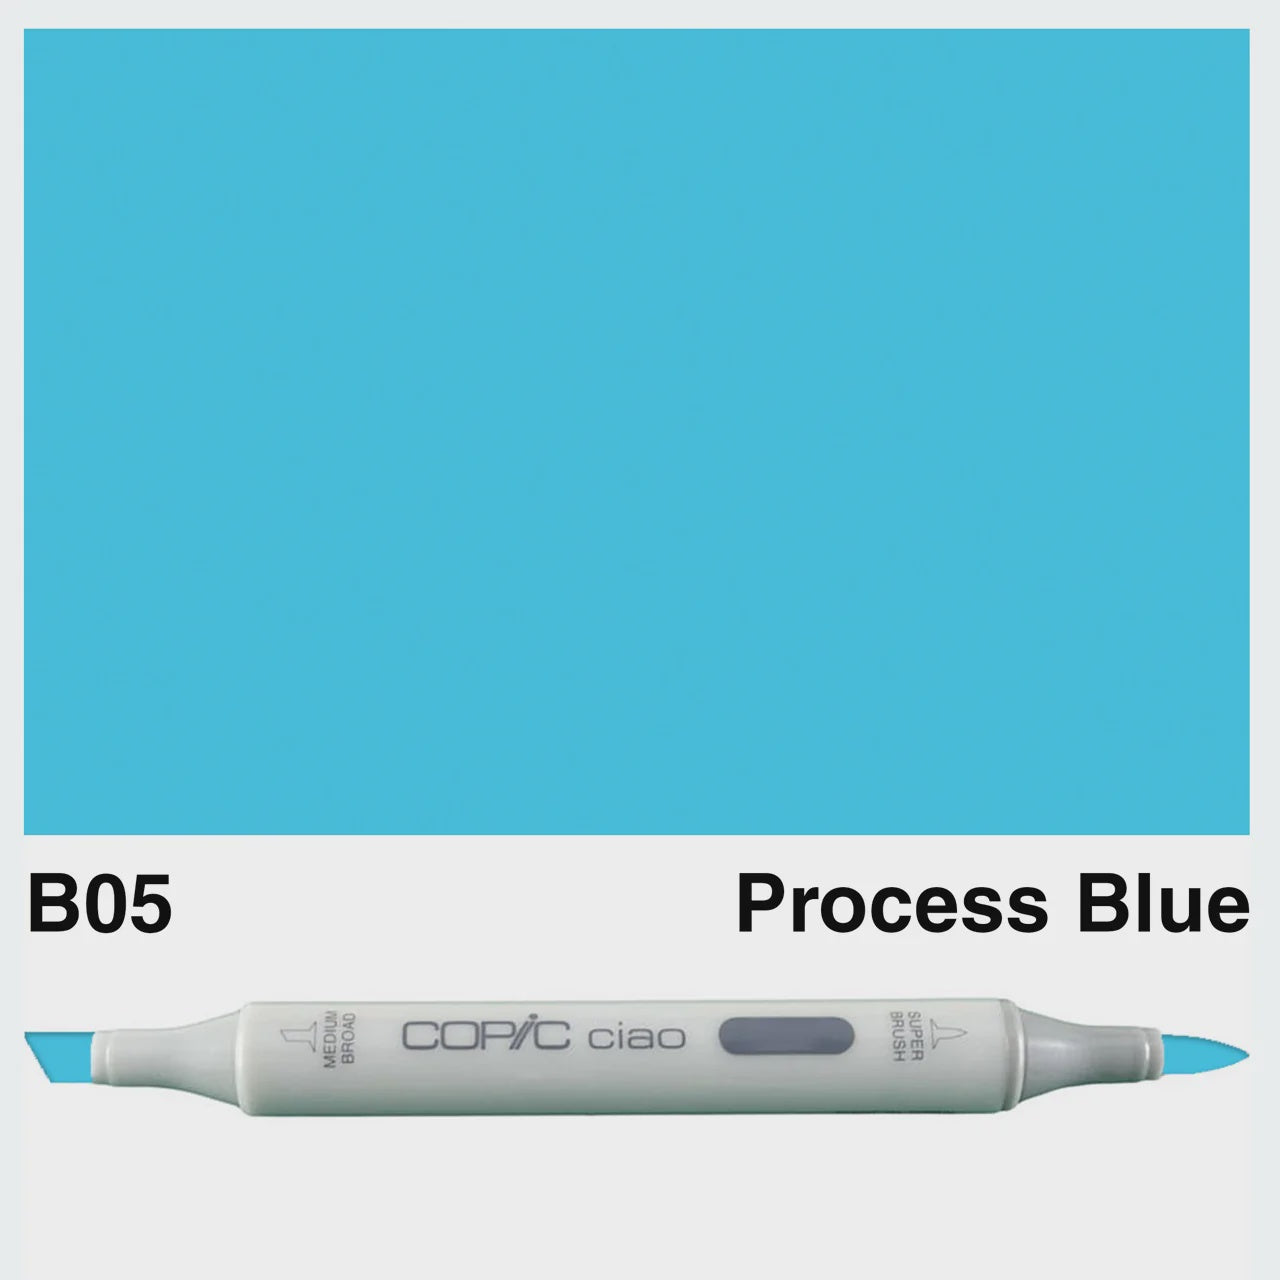 CIAO B05 PROCESS BLUE